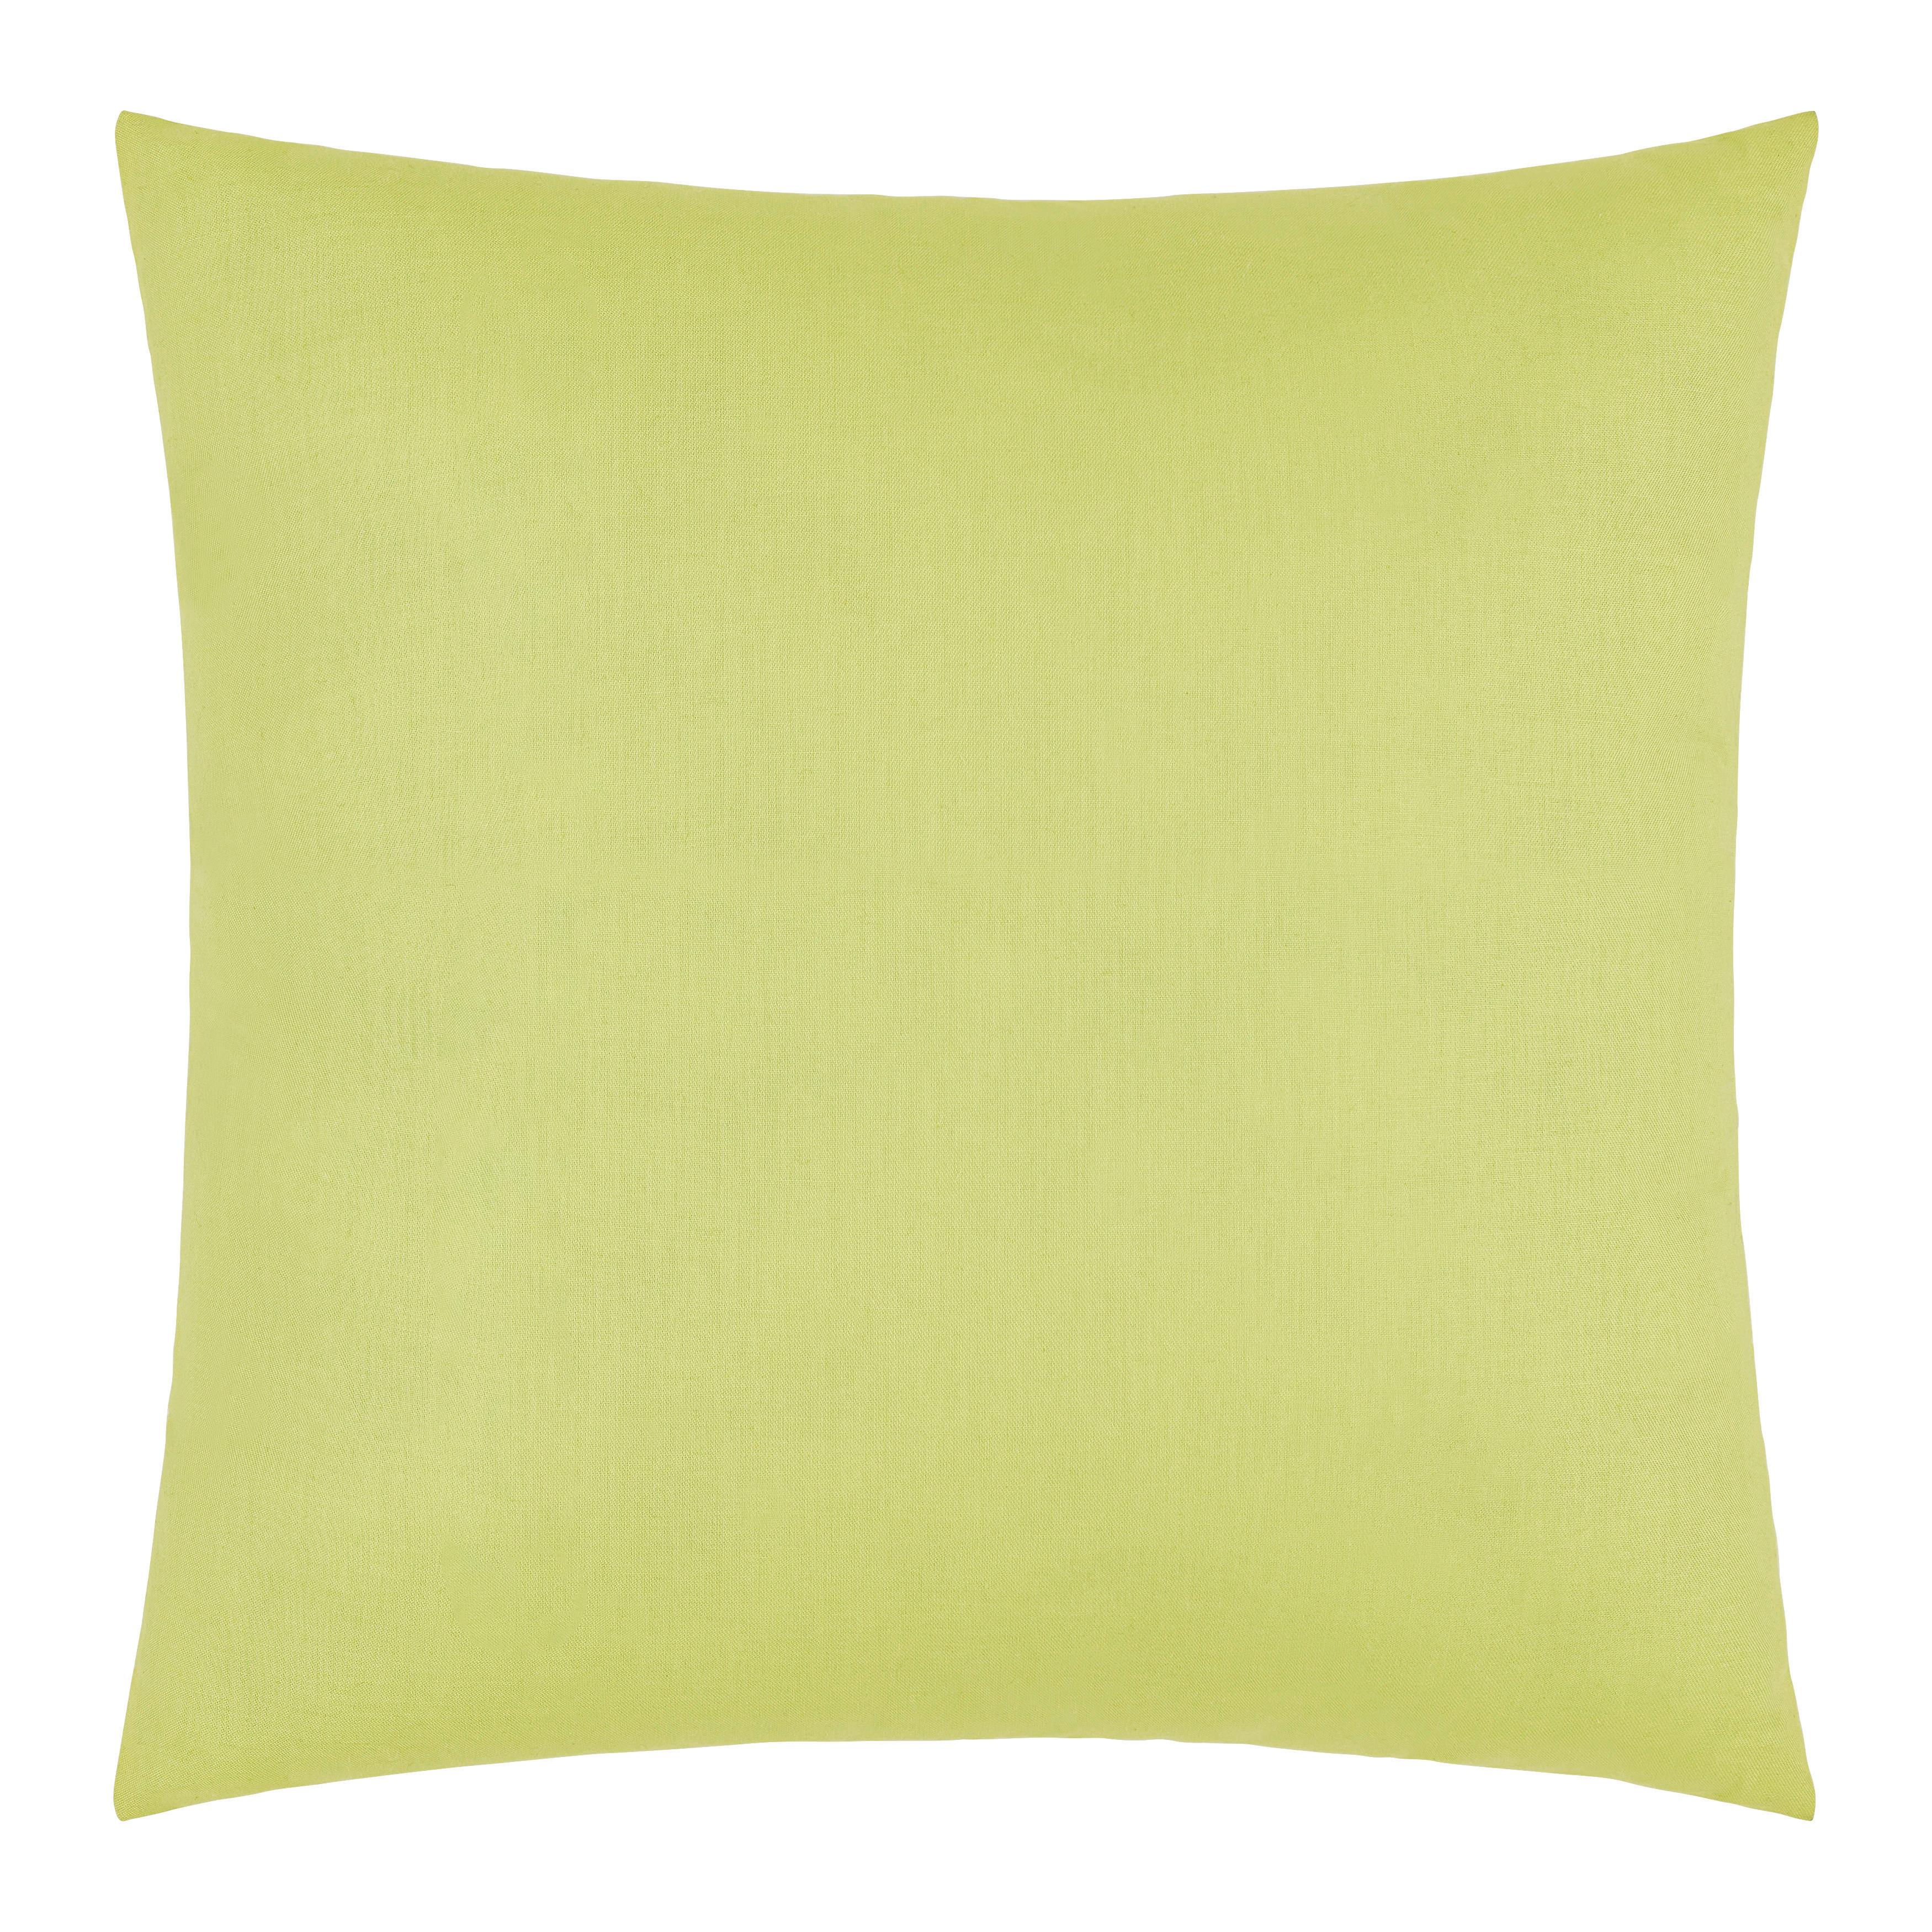 Dekorační Polštář Mex, 48/48cm, Zelená - zelená, Konvenční, textil (48/48cm) - Modern Living